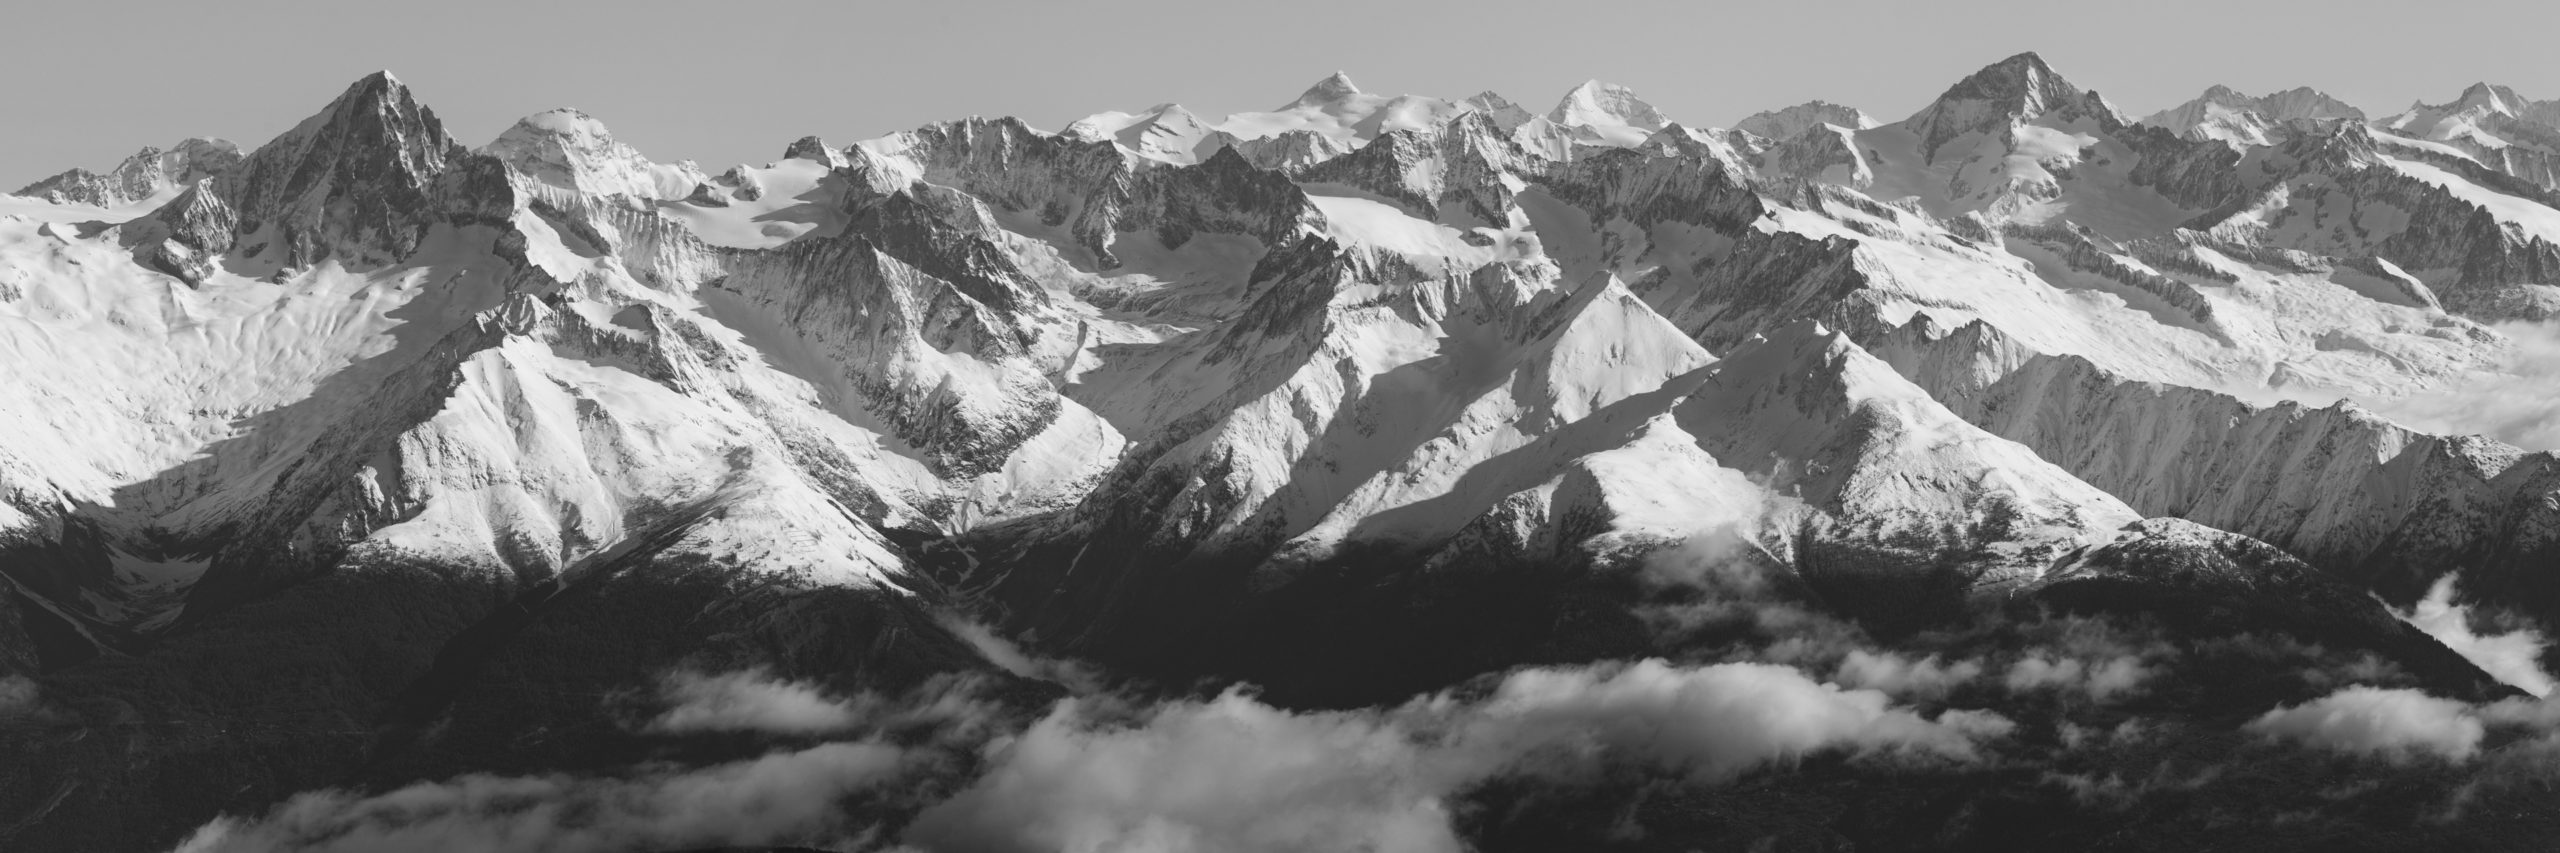 Panorama montagne - vue panoramique noir et blanc des Alpes Suisses Bernoises en Engadine proche de Zermatt